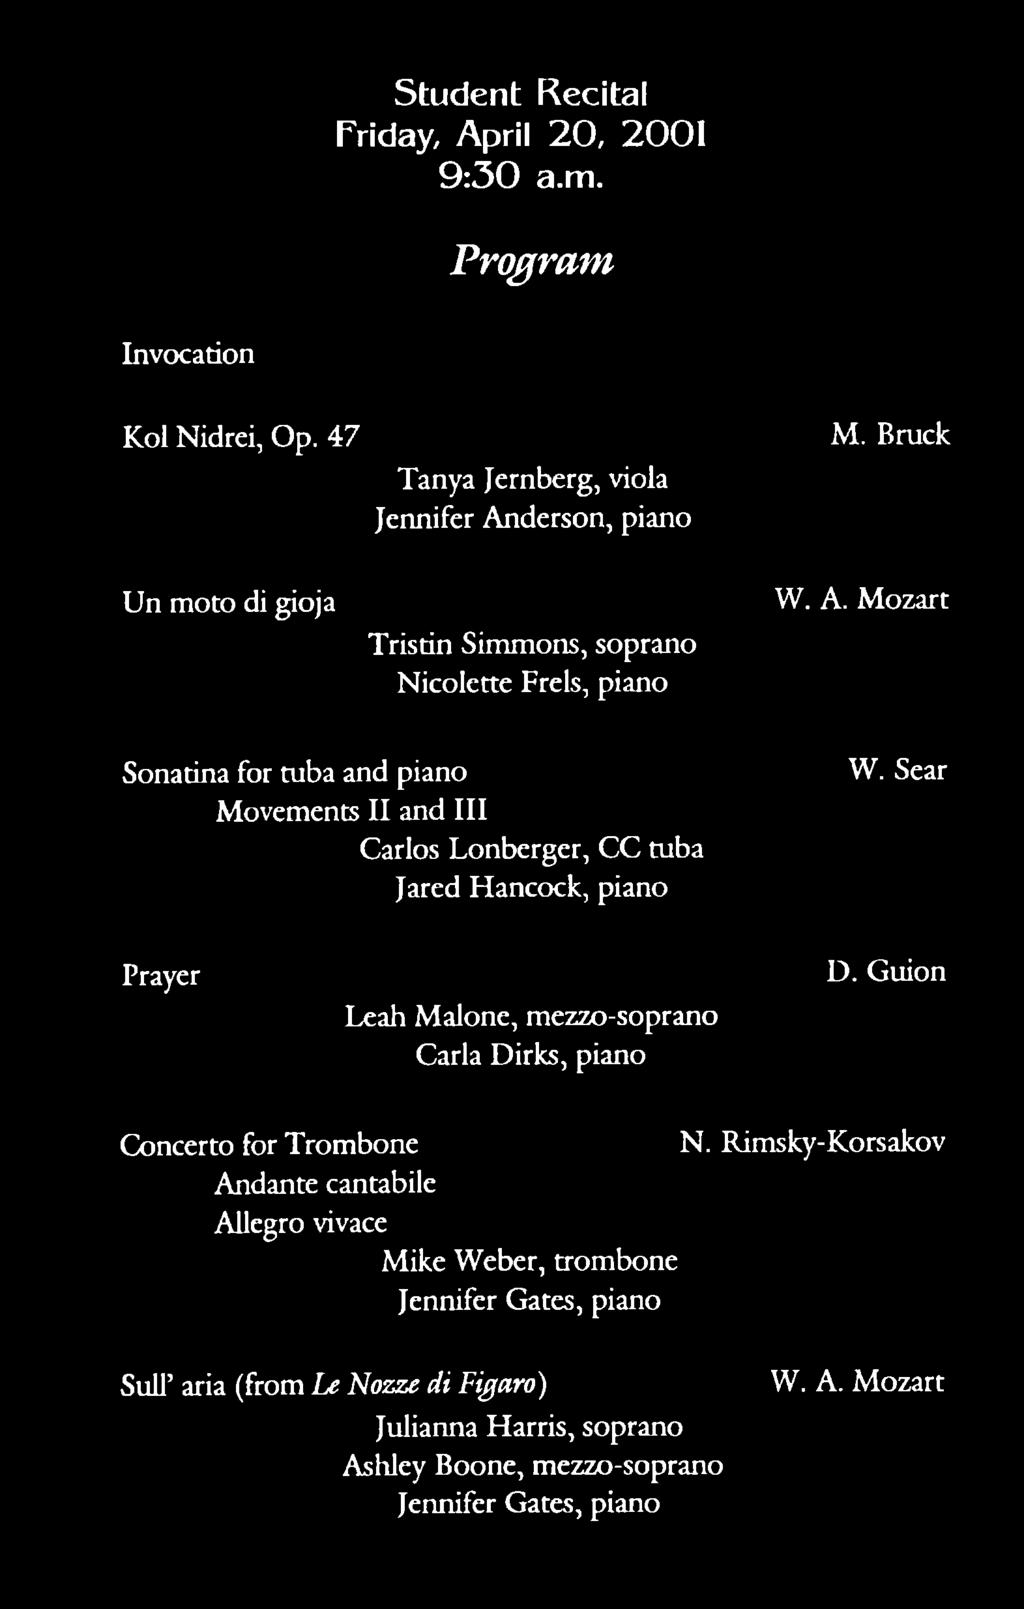 Sear Prayer Leah Malone, mezzo-soprano Carla Dirks, piano D. Guion Concerto for Trombone N.